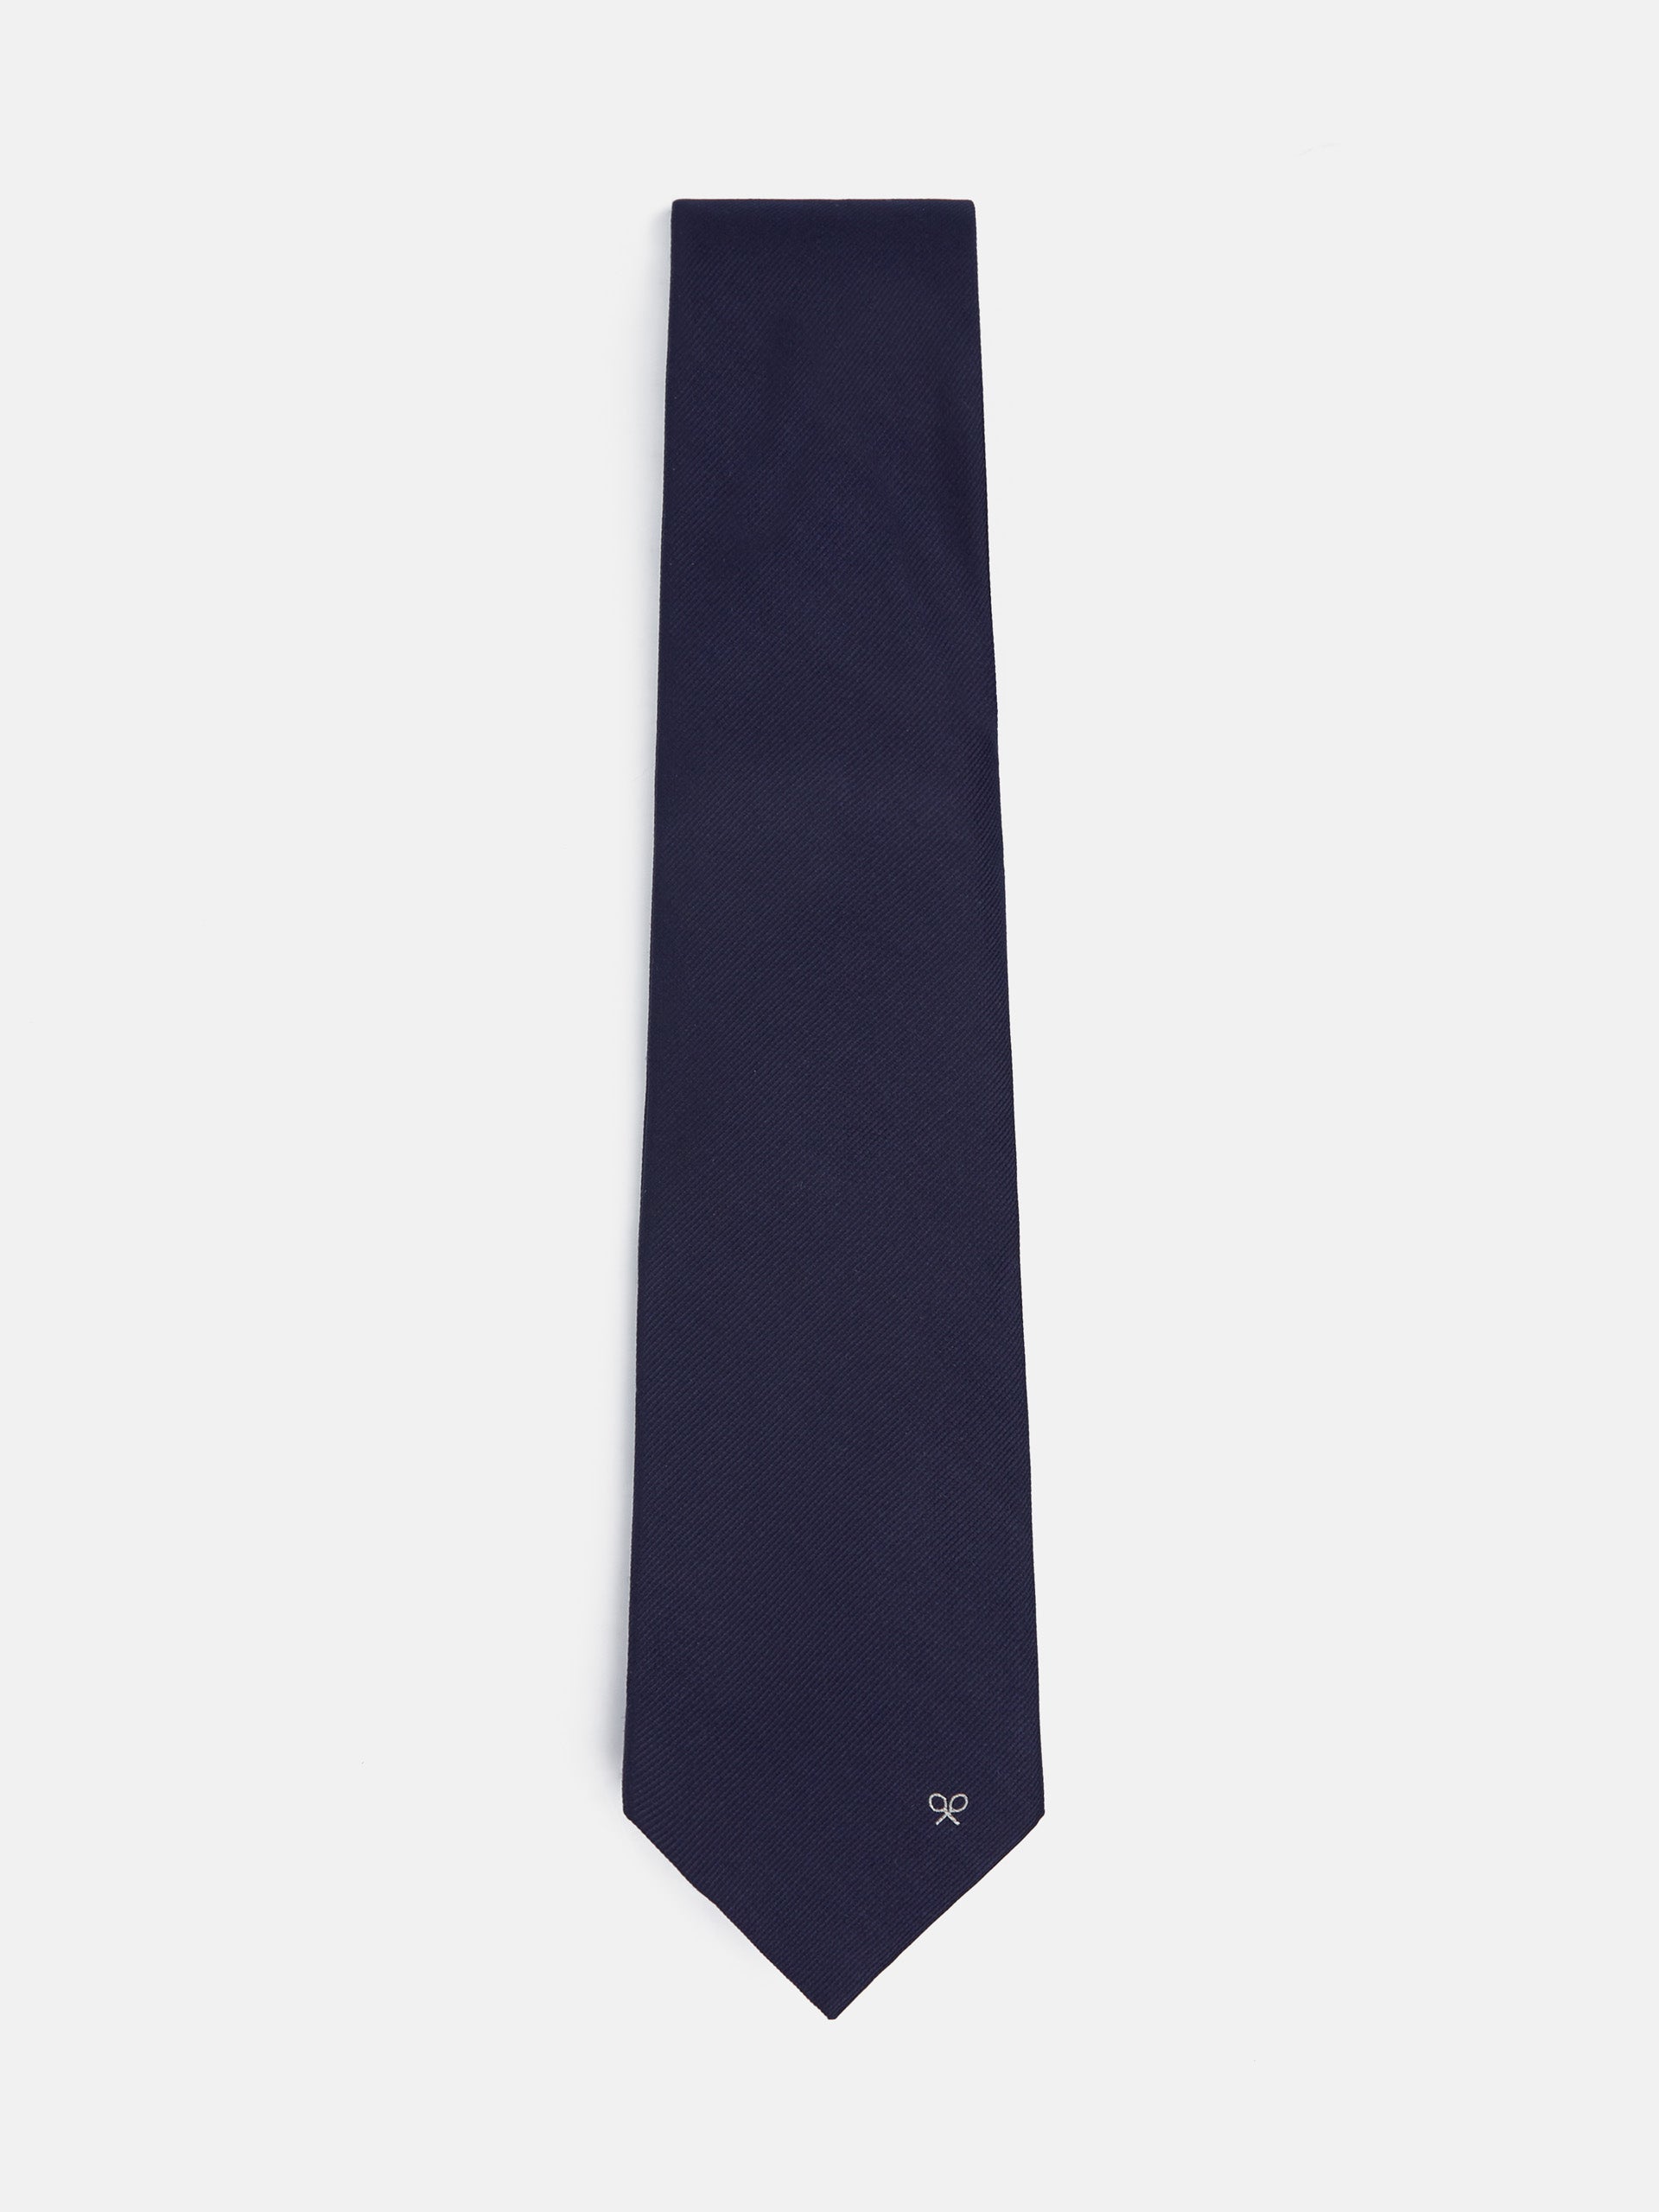 Cravate silbon unie bleu marine